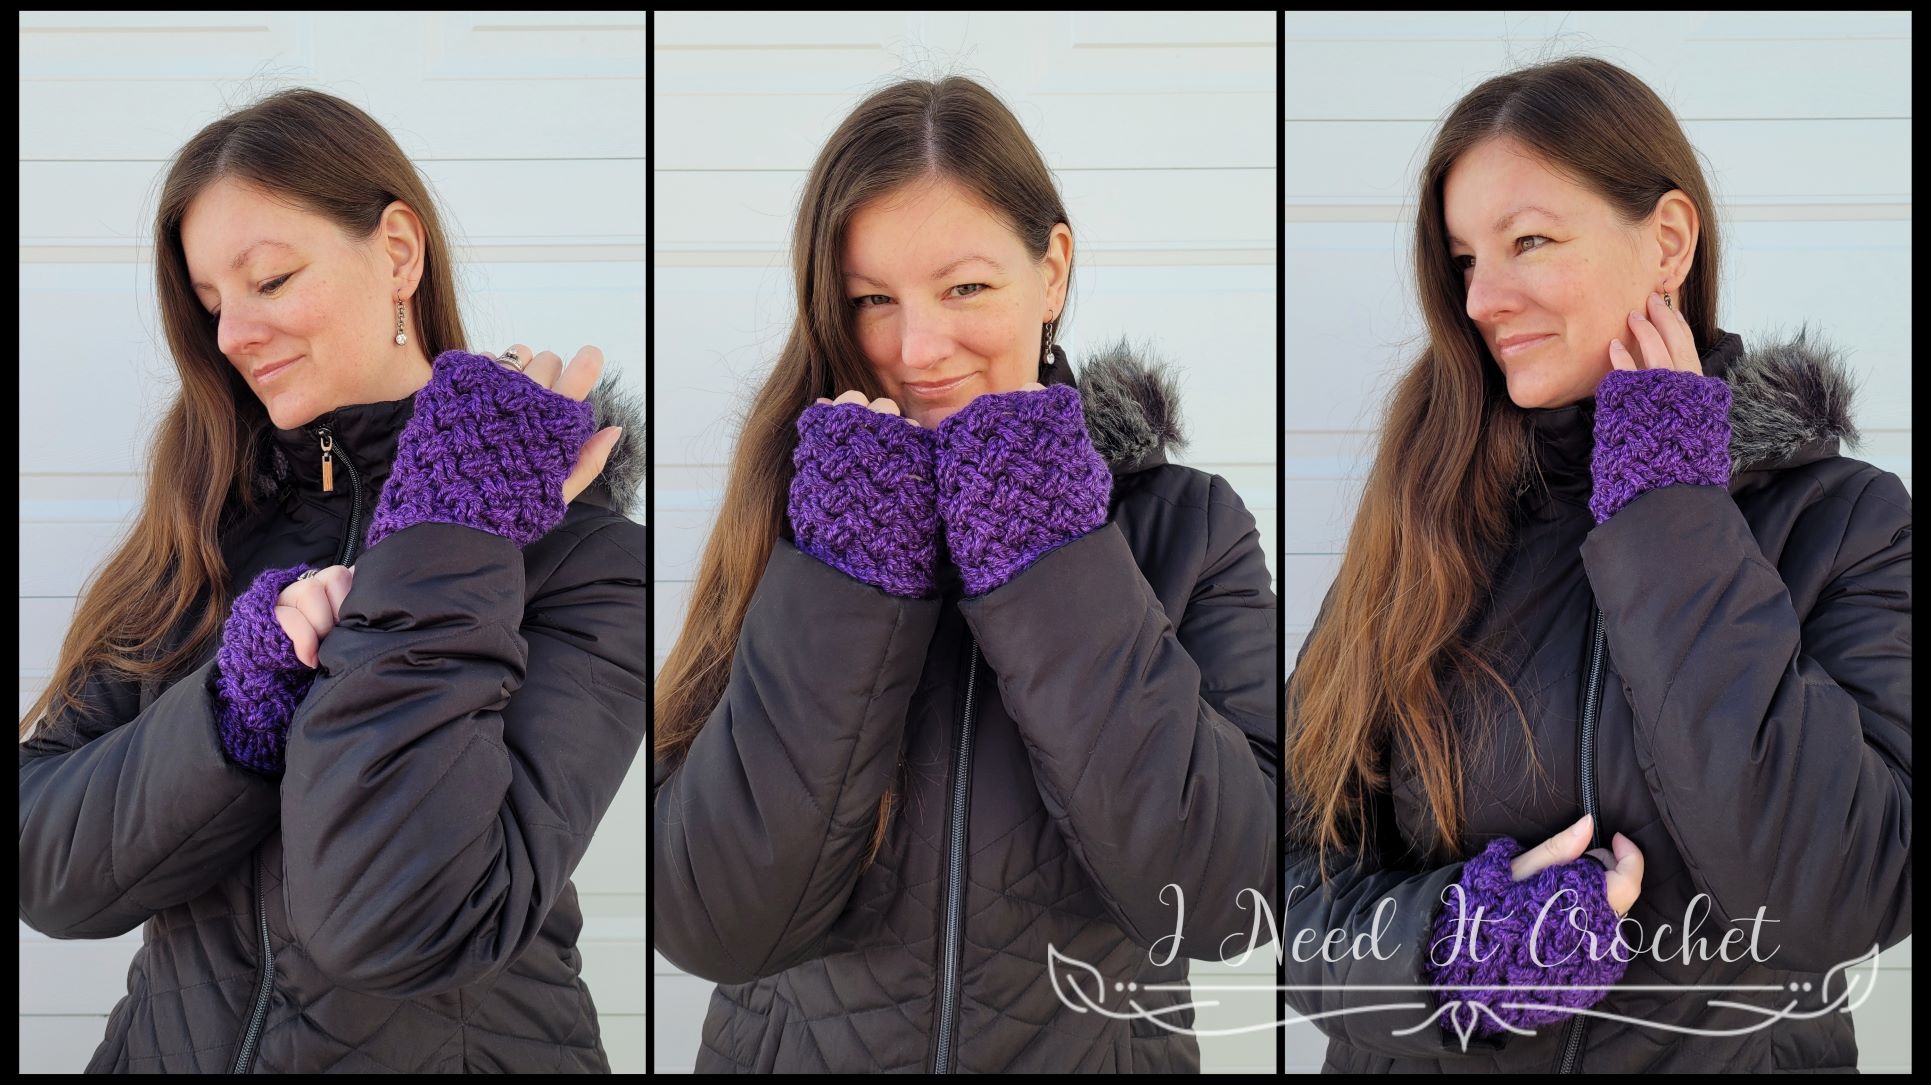 Aisling - Crochet Fingerless Gloves Pattern